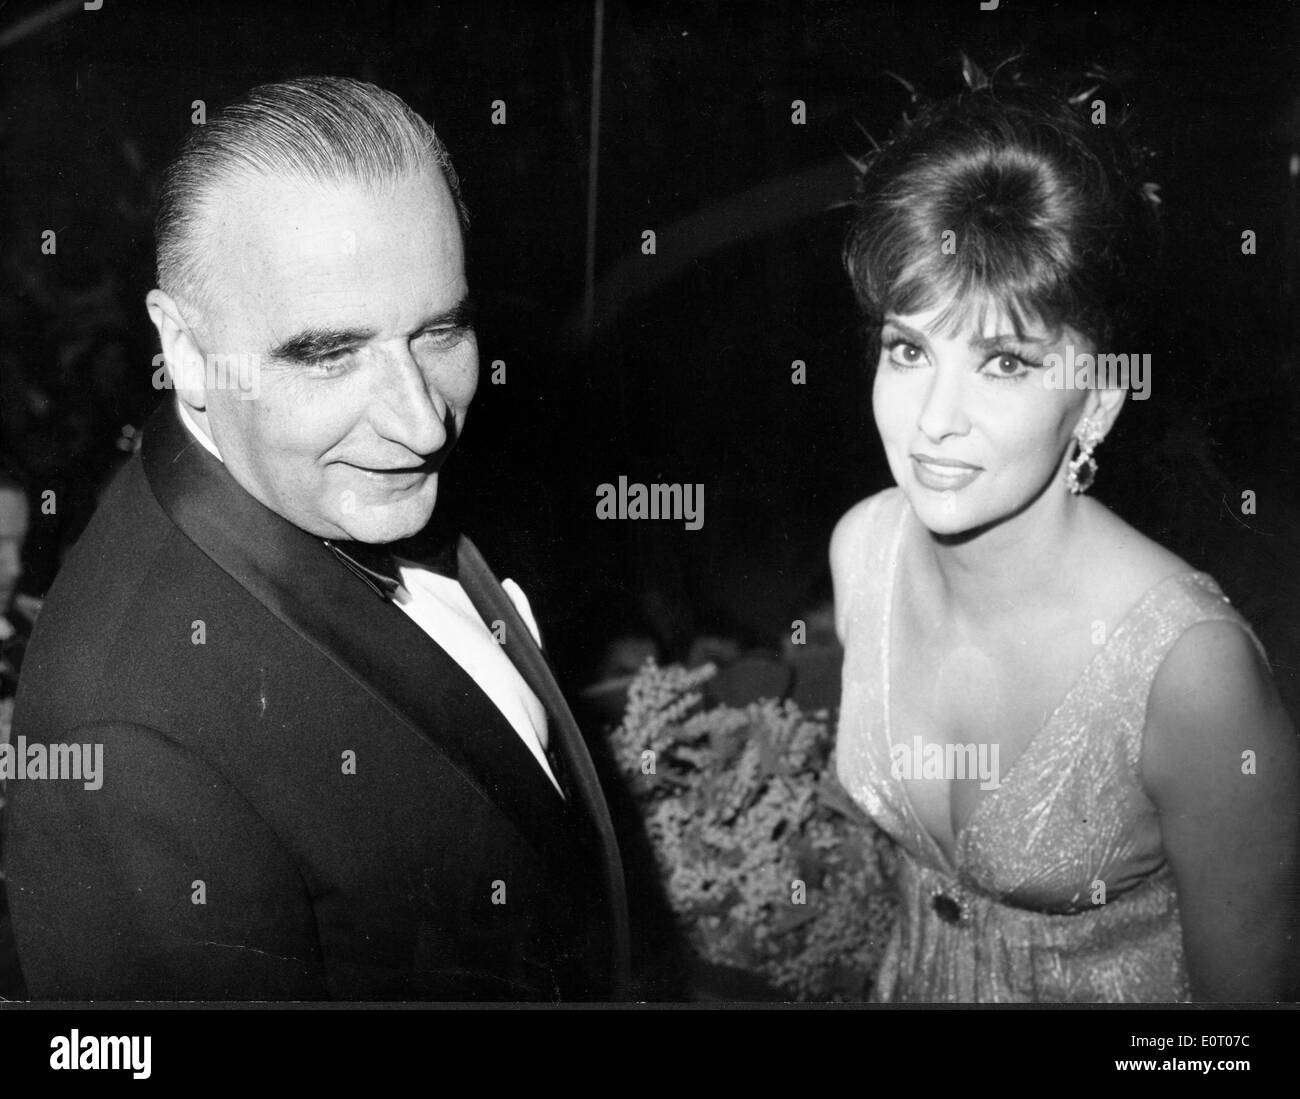 Georges Pompidou lors d'un événement avec une escorte Banque D'Images